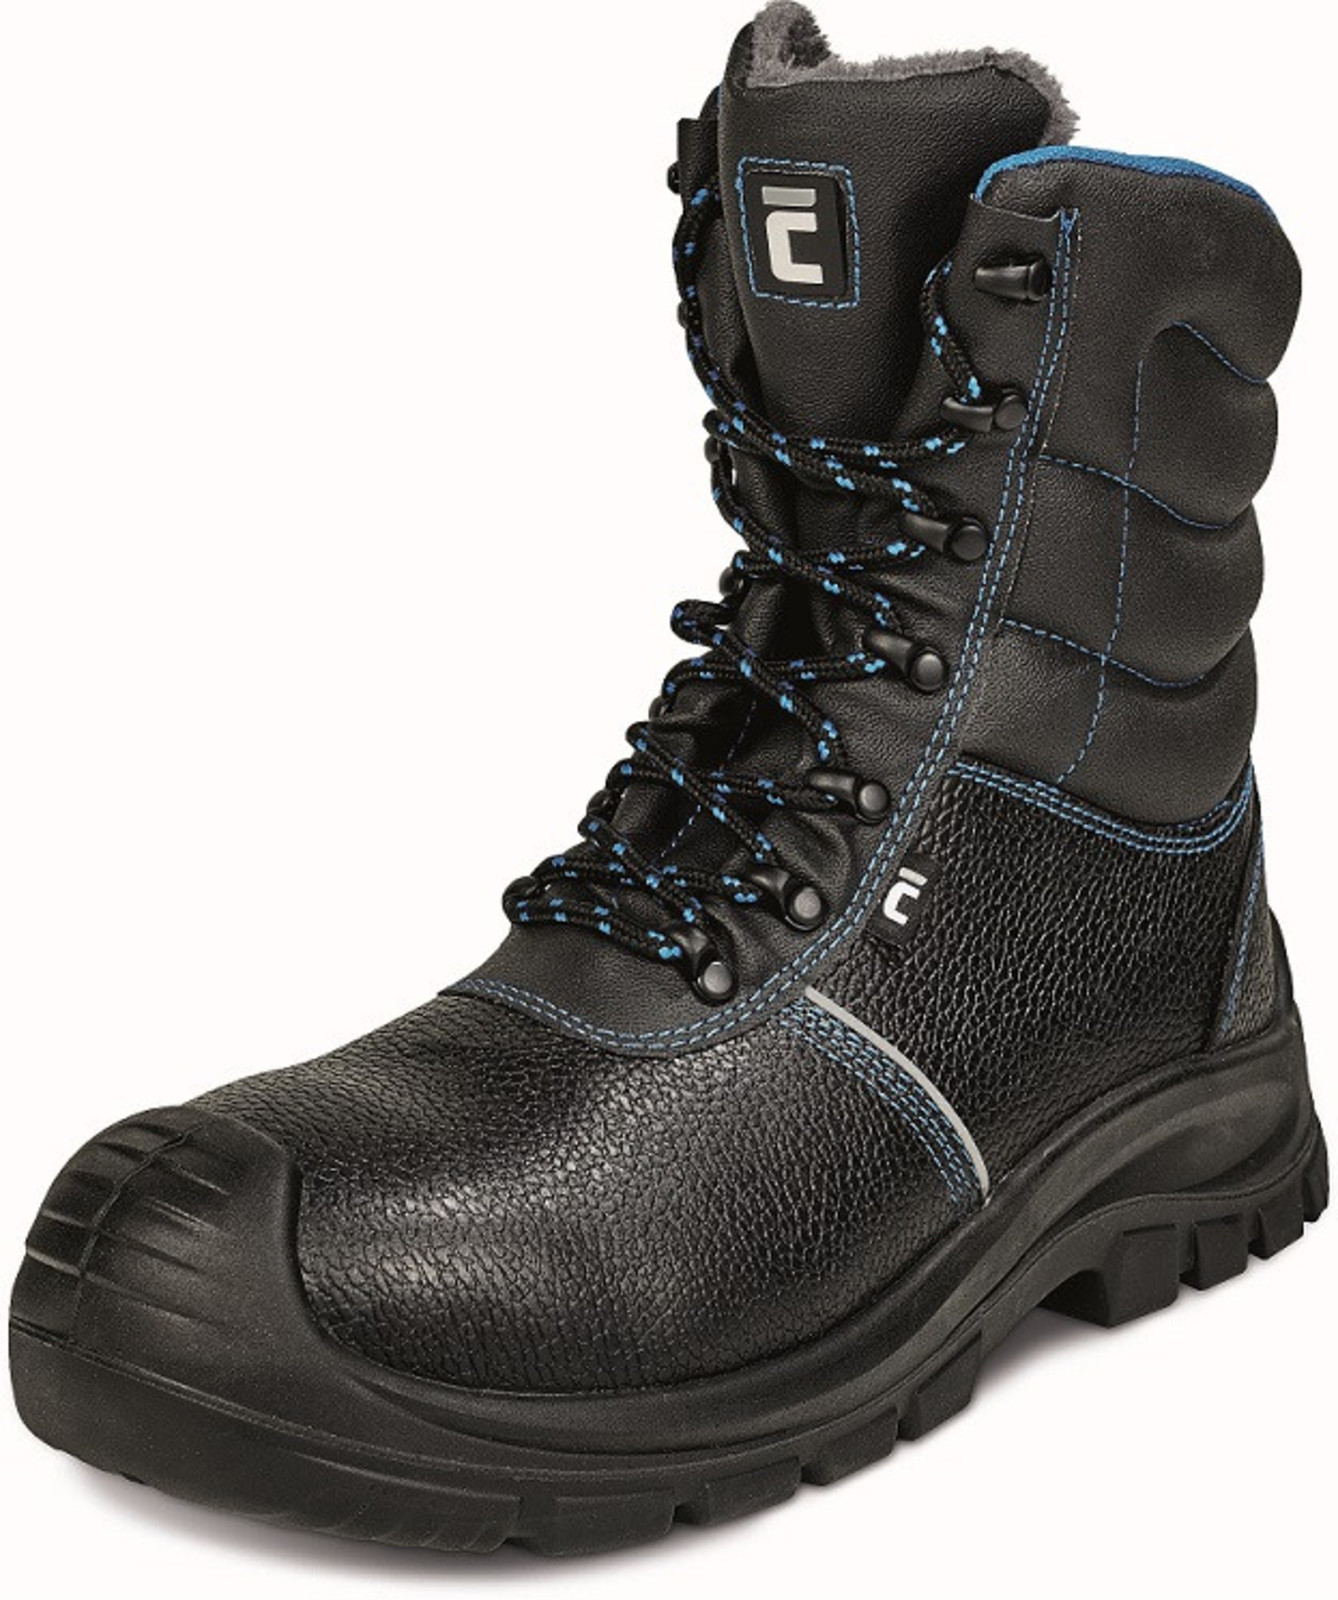 Zimná vysoká bezpečnostná obuv Raven XT S3 - veľkosť: 43, farba: čierna